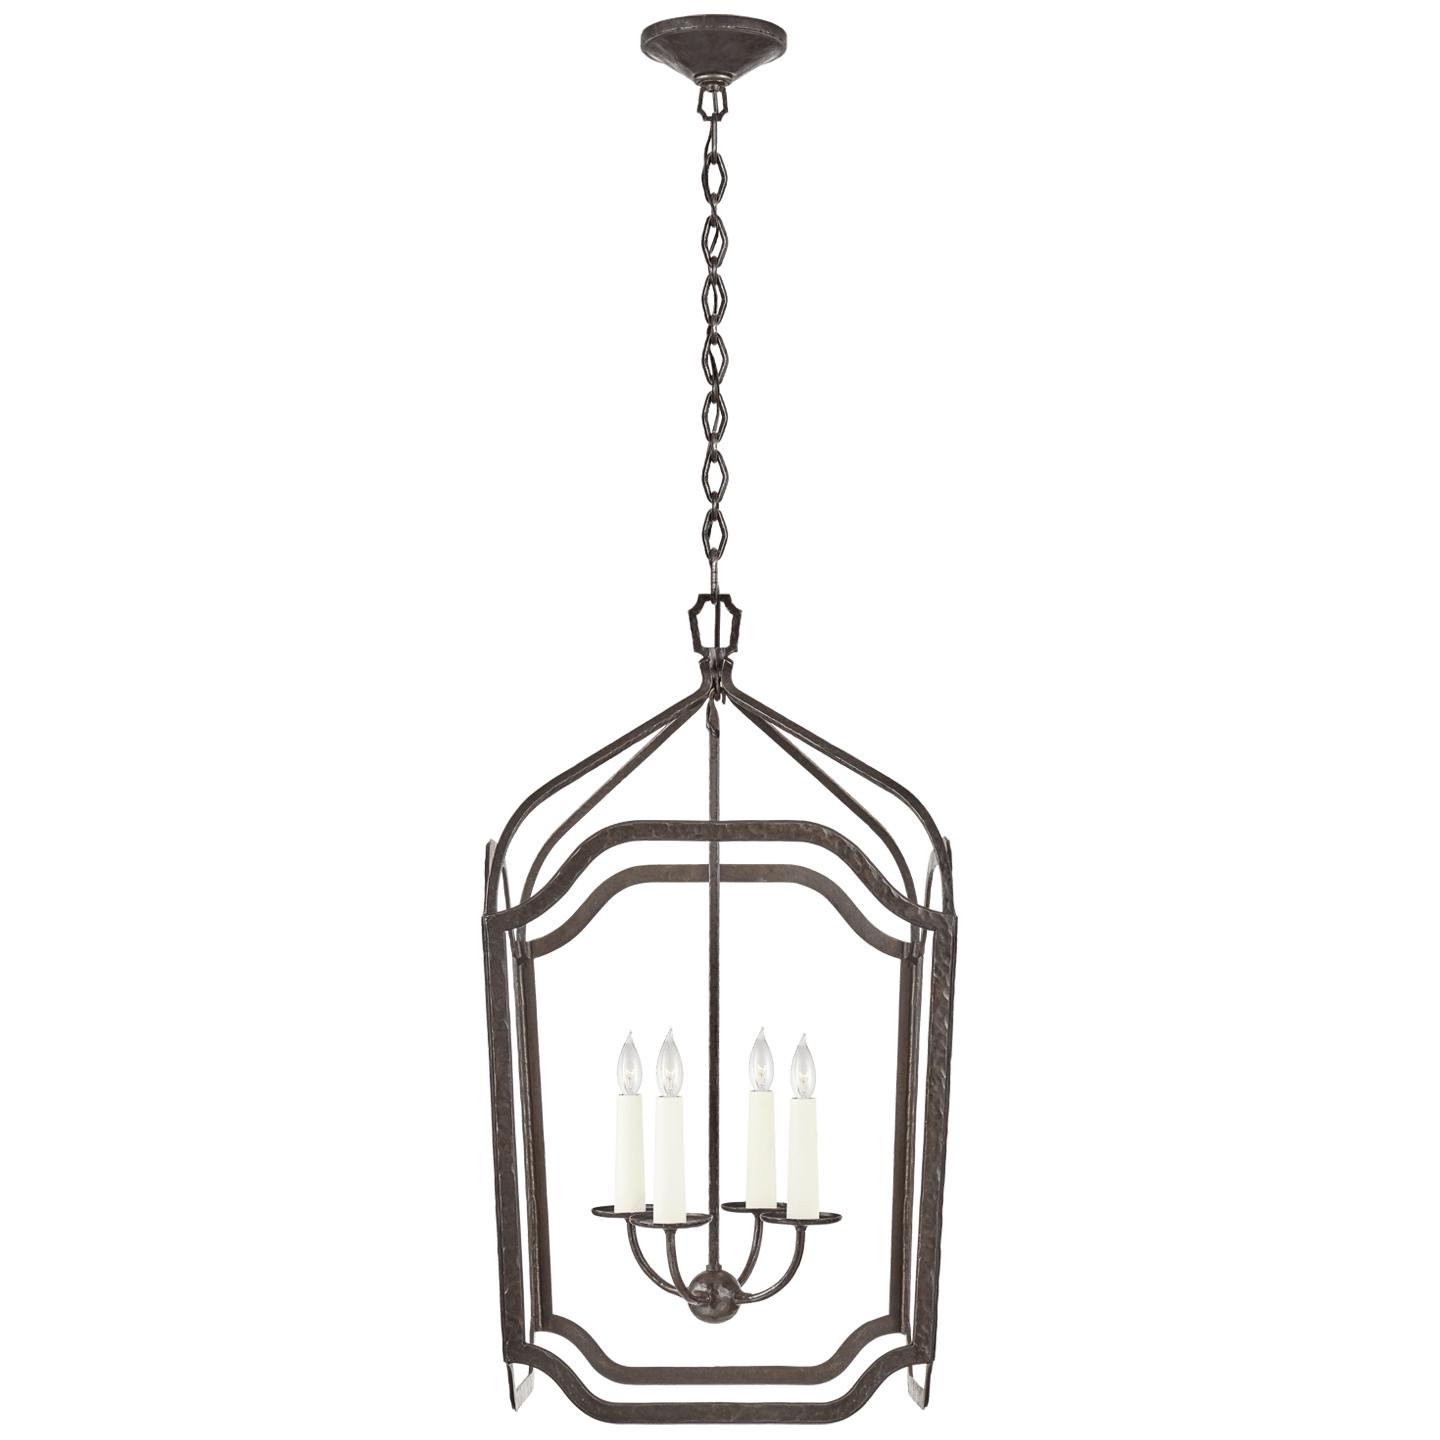 Купить Подвесной светильник Ancaster Medium Blacksmith Lantern в интернет-магазине roooms.ru